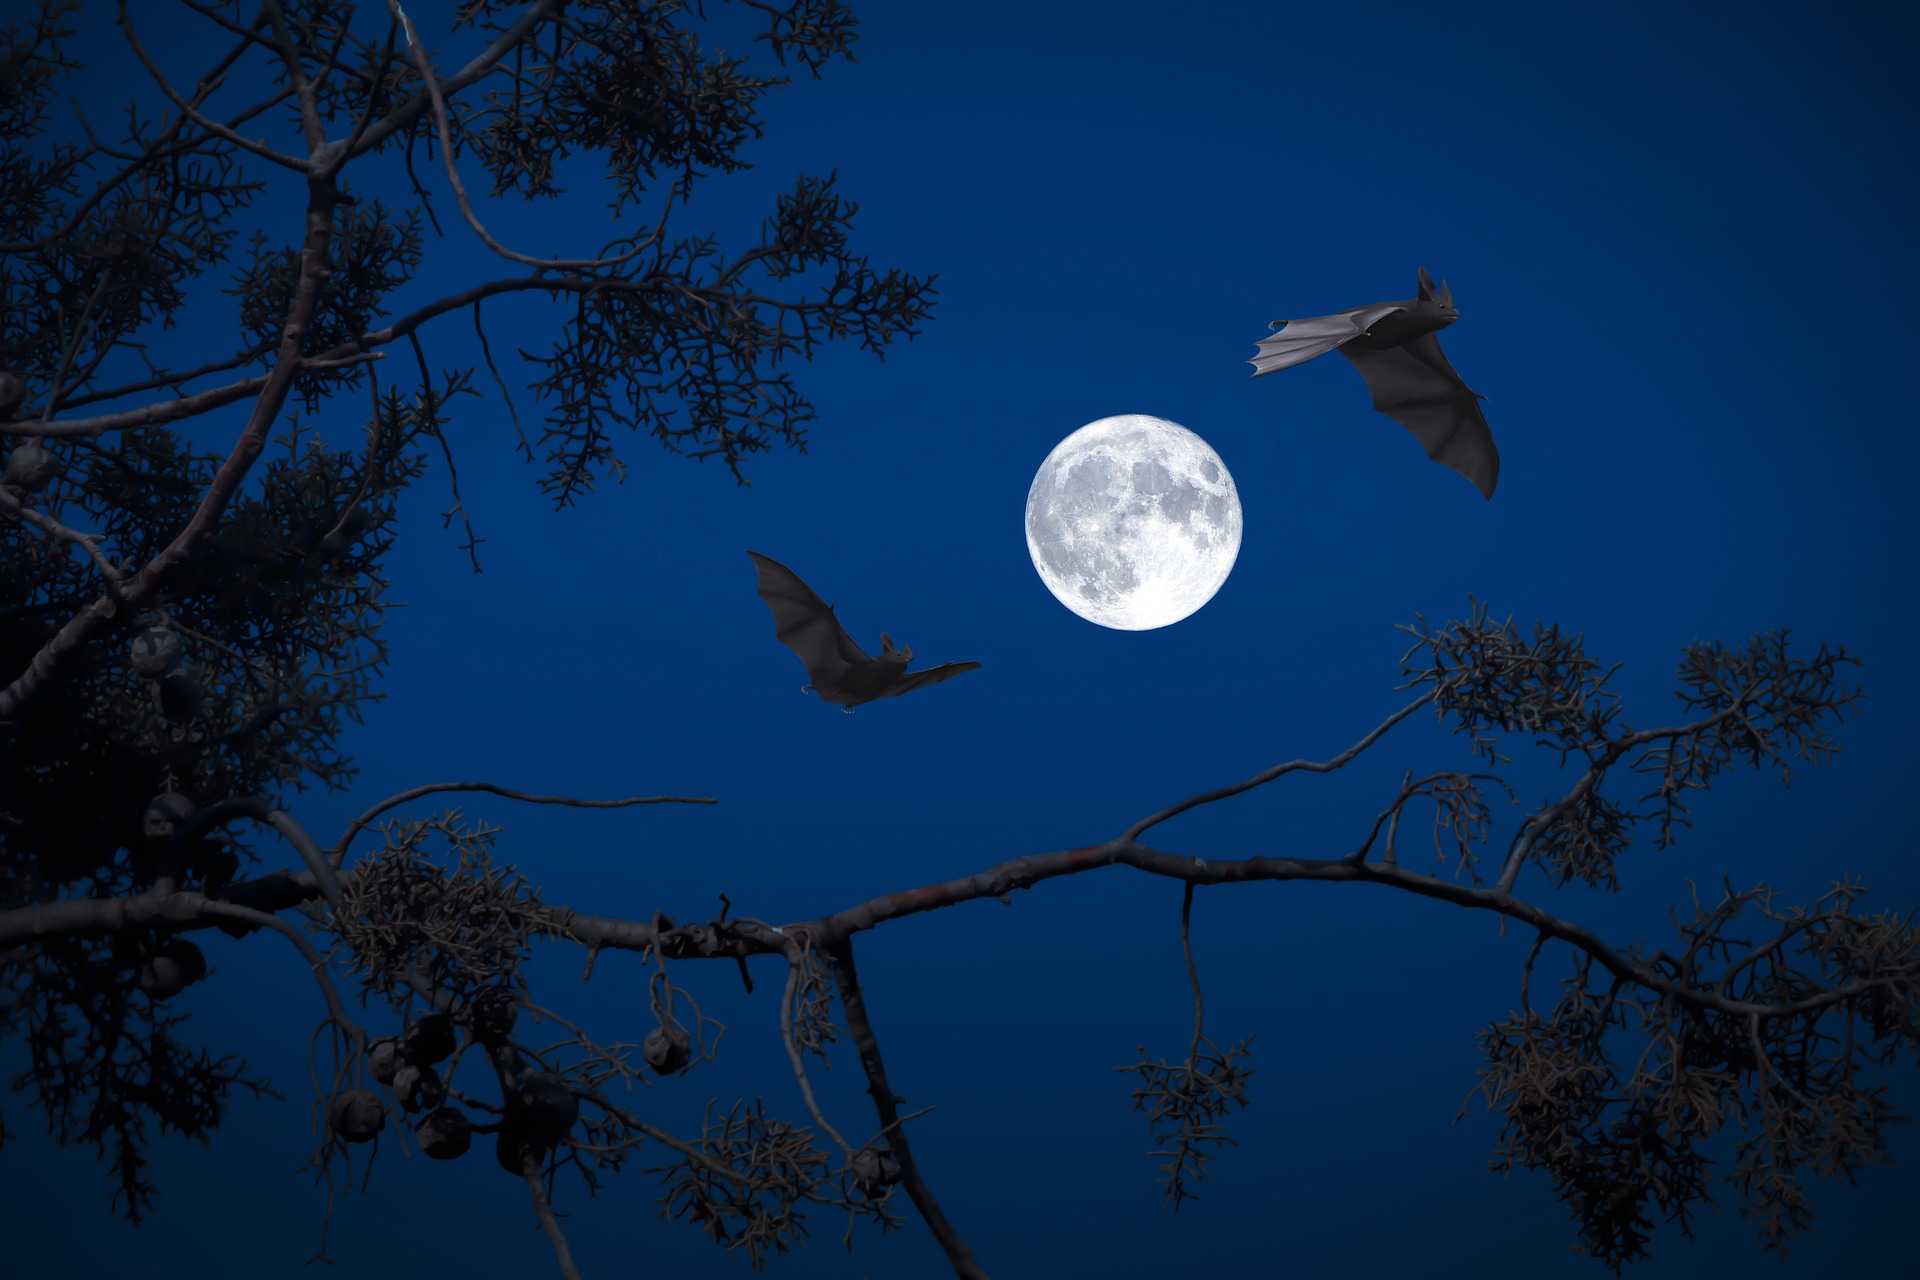 Deux chauve-souris volant devant la pleine lune.